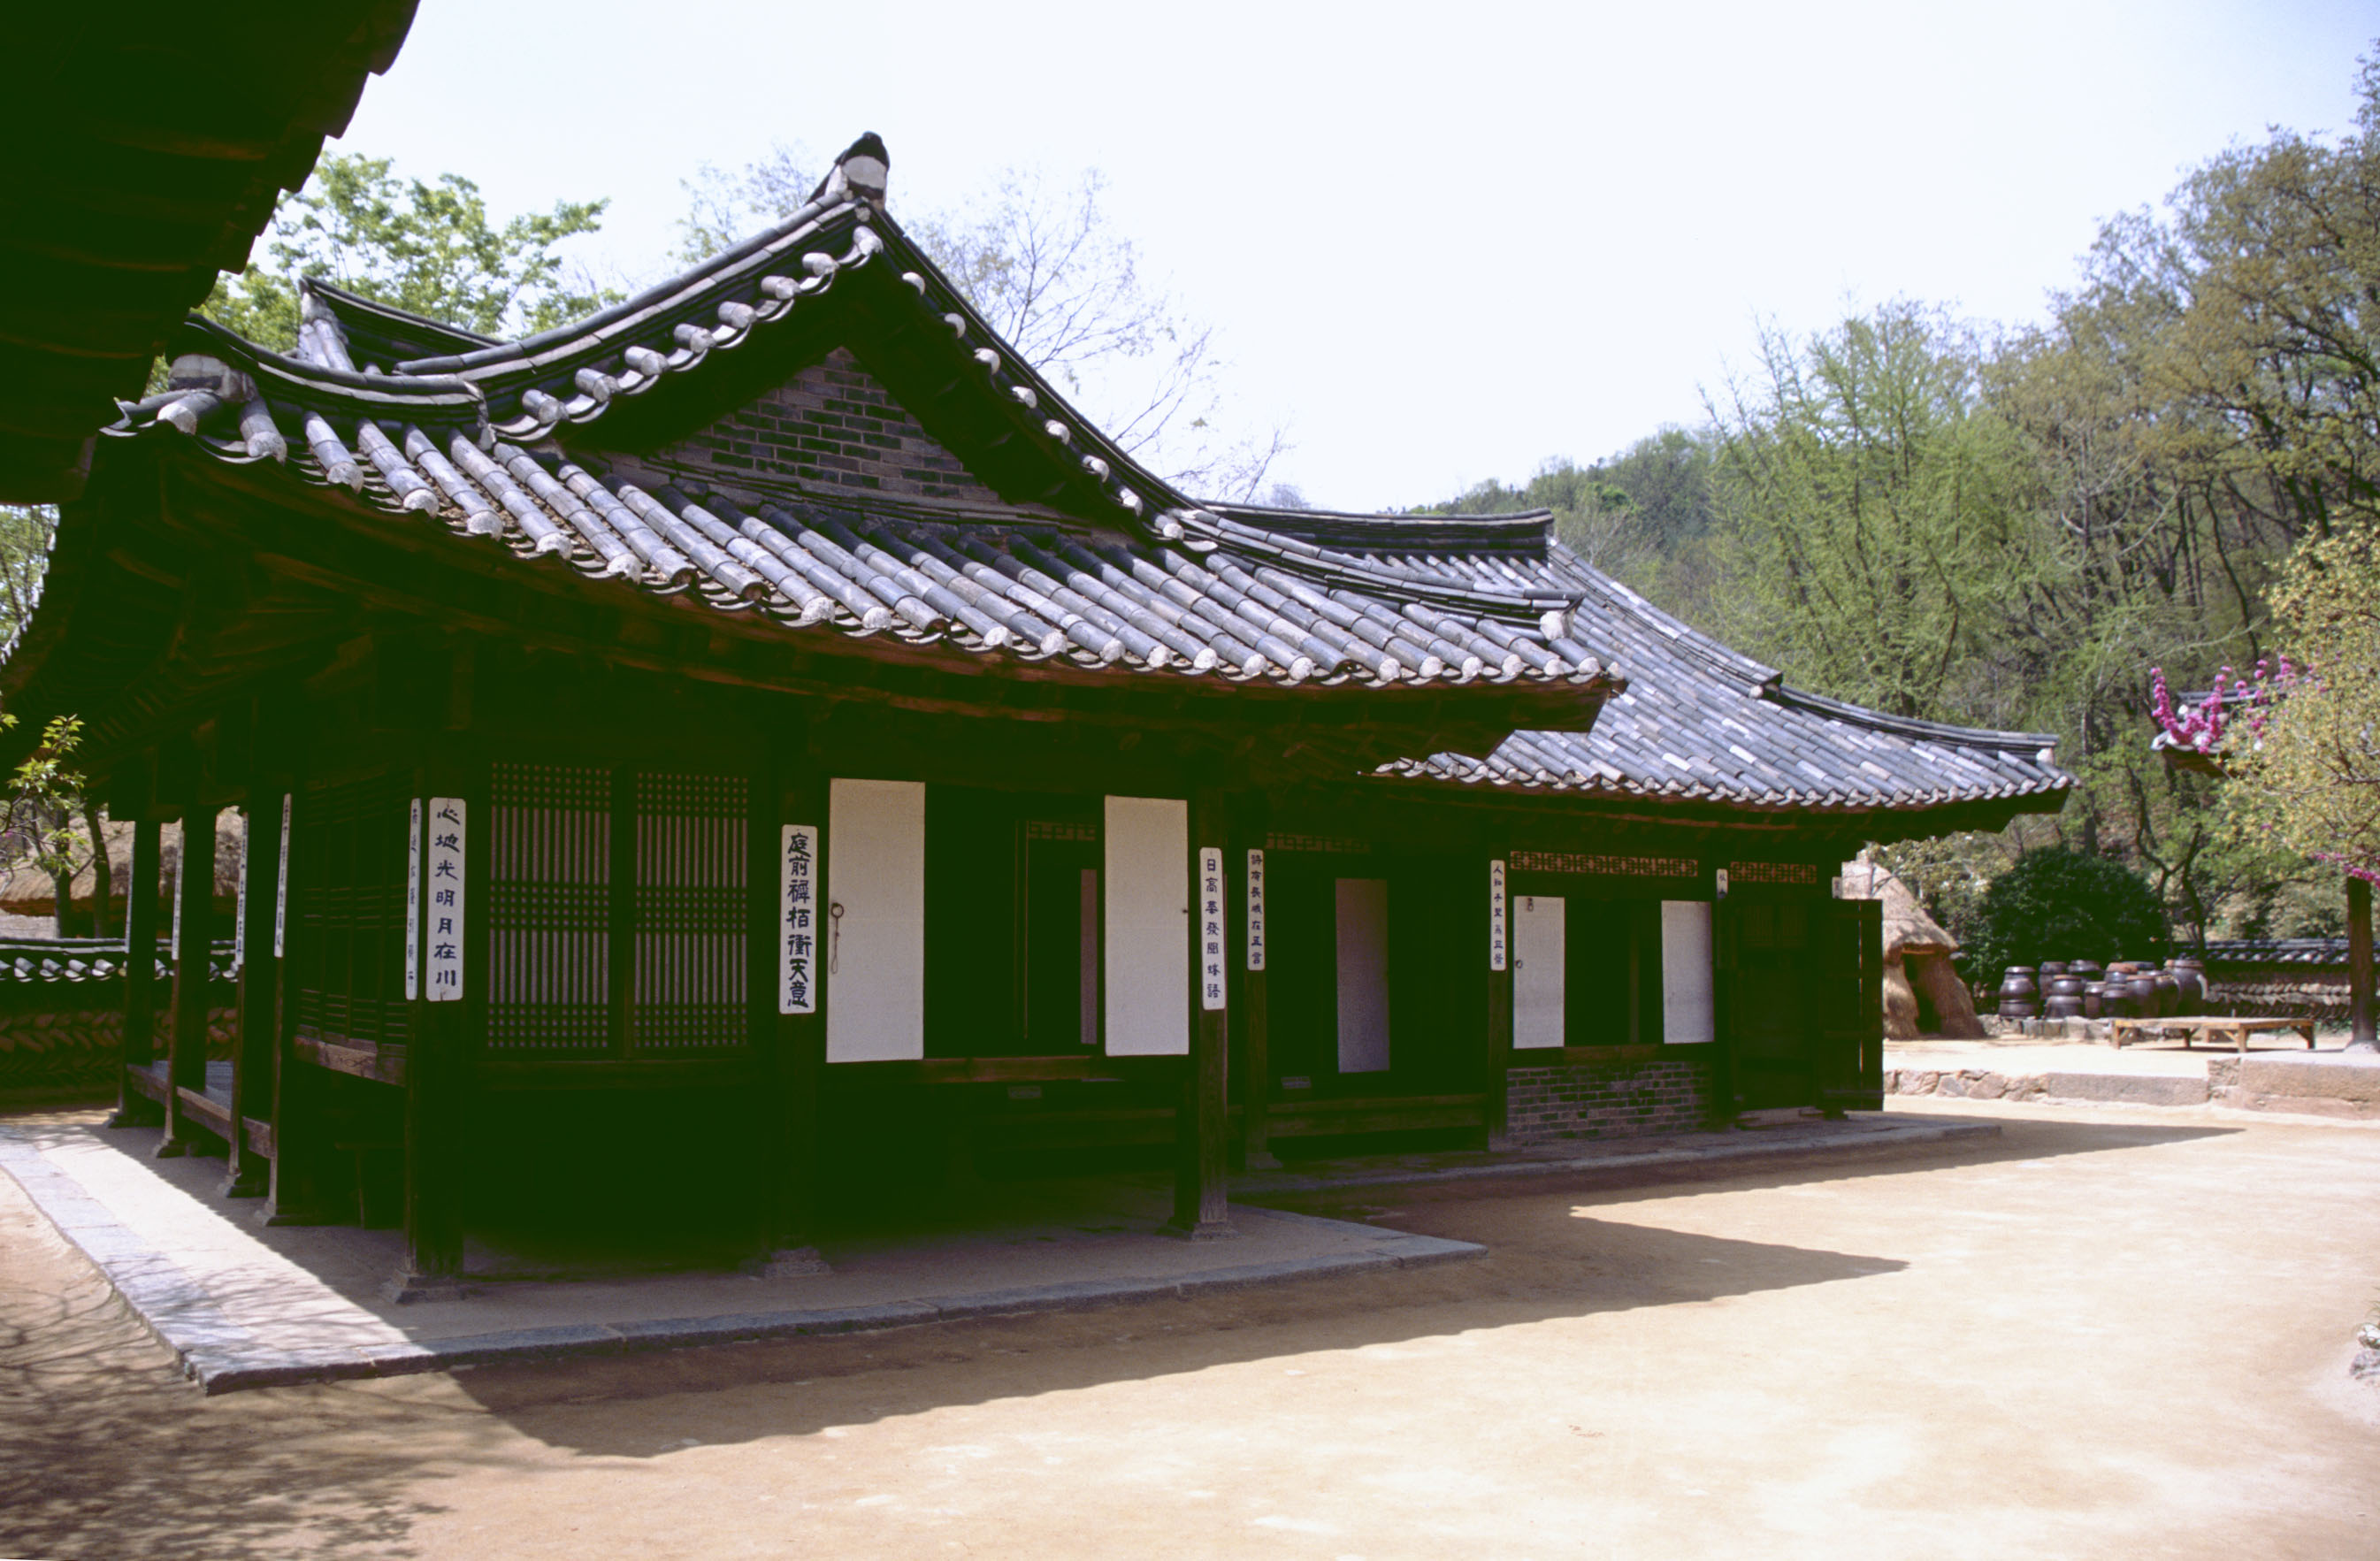 fotografia, material, livra, ajardine, imagine, proveja fotografia,Casa coreana tradicional, tradio, , , 